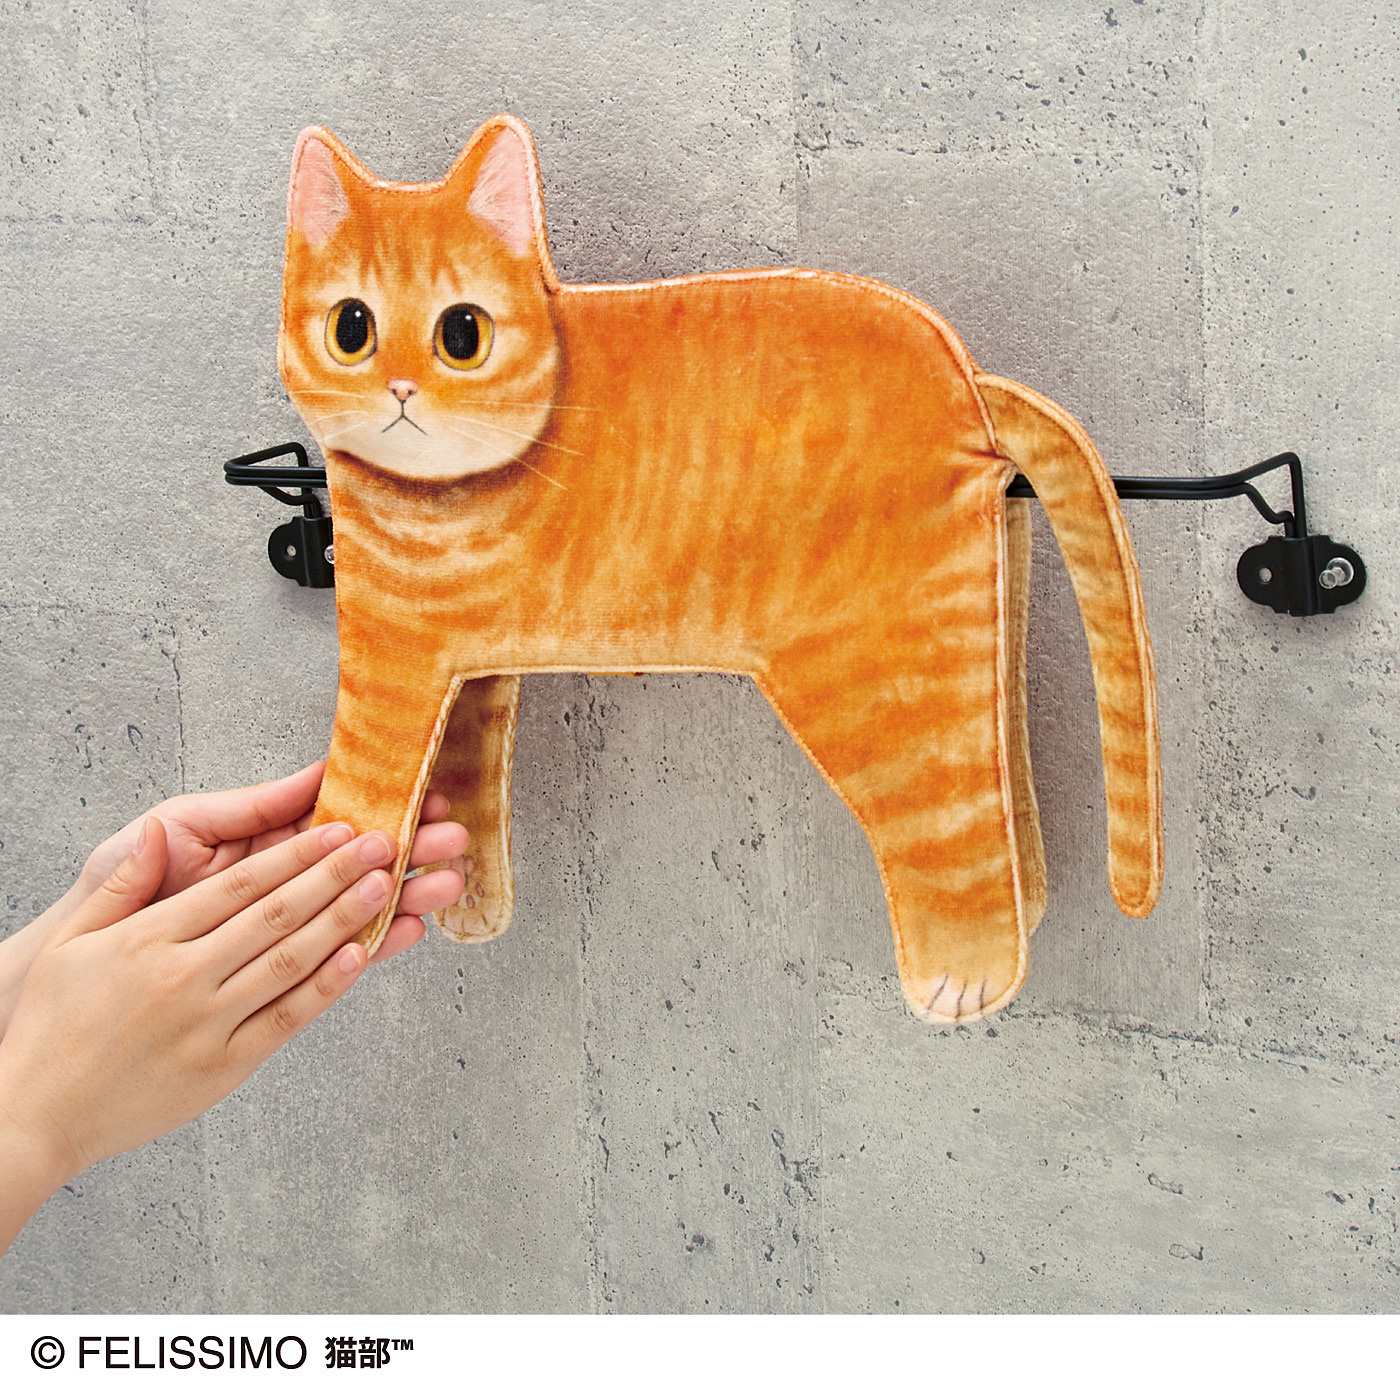 細いところでくつろぐ「猫あるある」を再現した「モノレール猫タオル